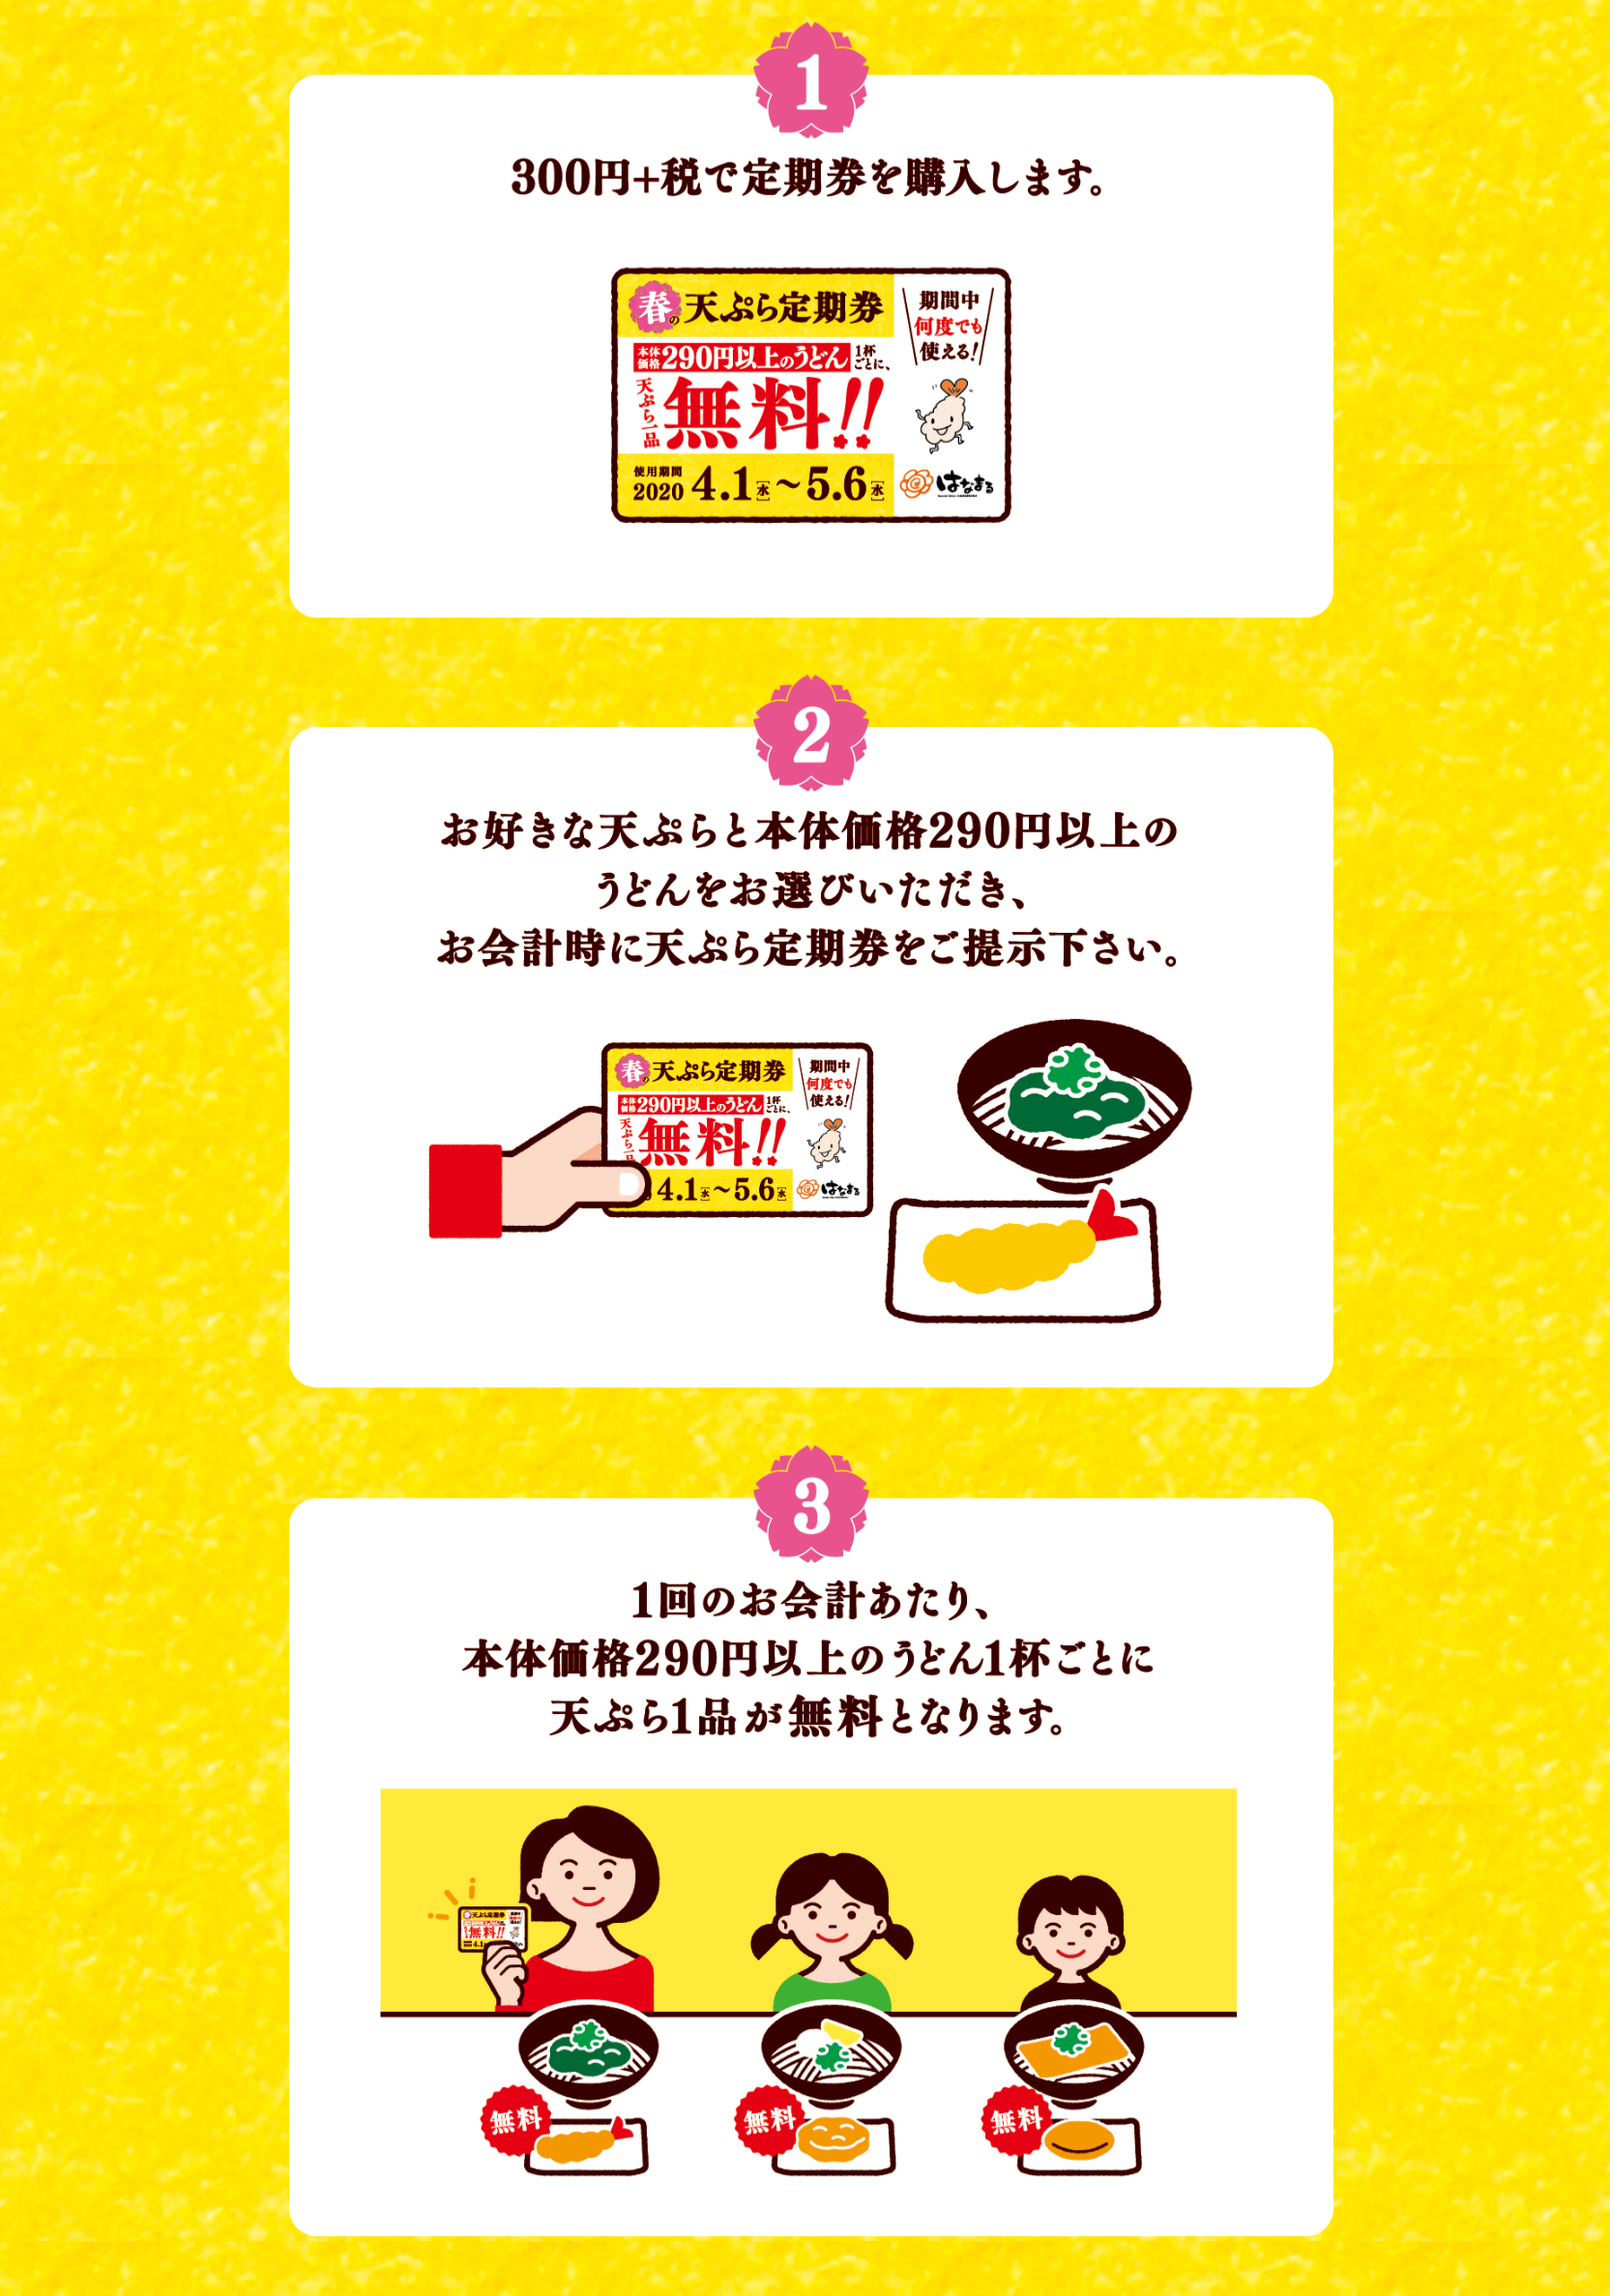 「春の天ぷら定期券」の利用方法